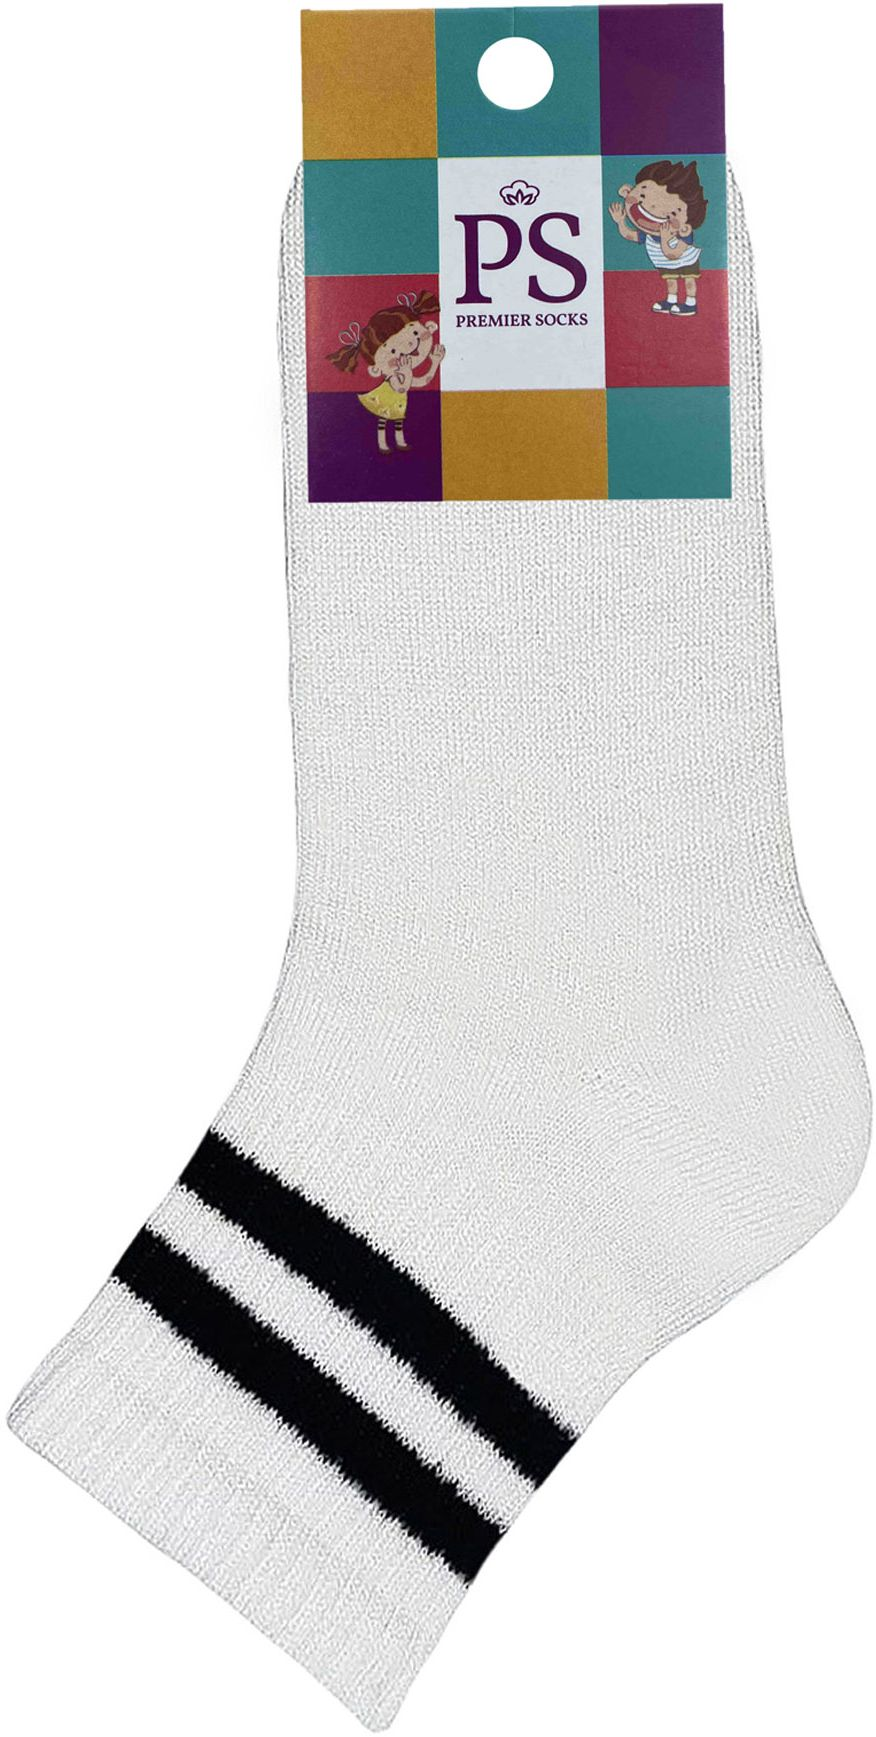 Шкарпетки дитячі Premier Socks 18-20 1 пара білі з чорними смужками (4820163320076)фото2